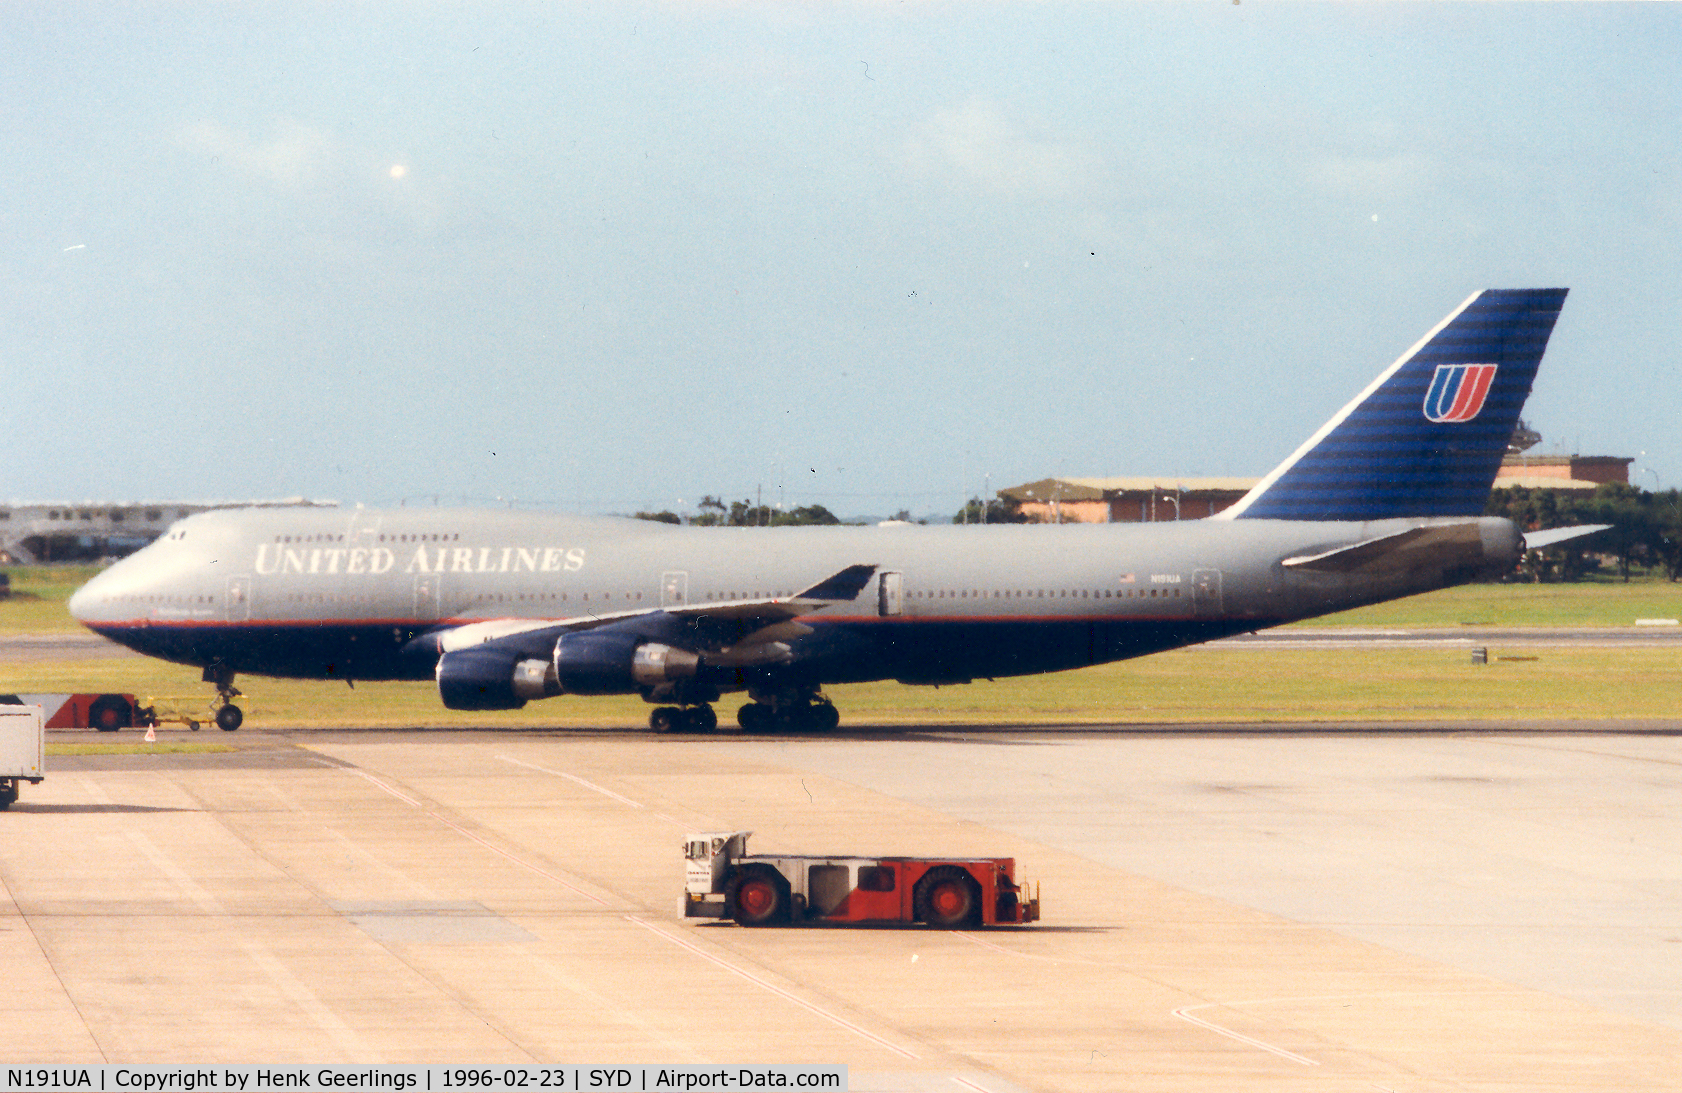 N191UA, 1993 Boeing 747-422 C/N 26880, United Airlines